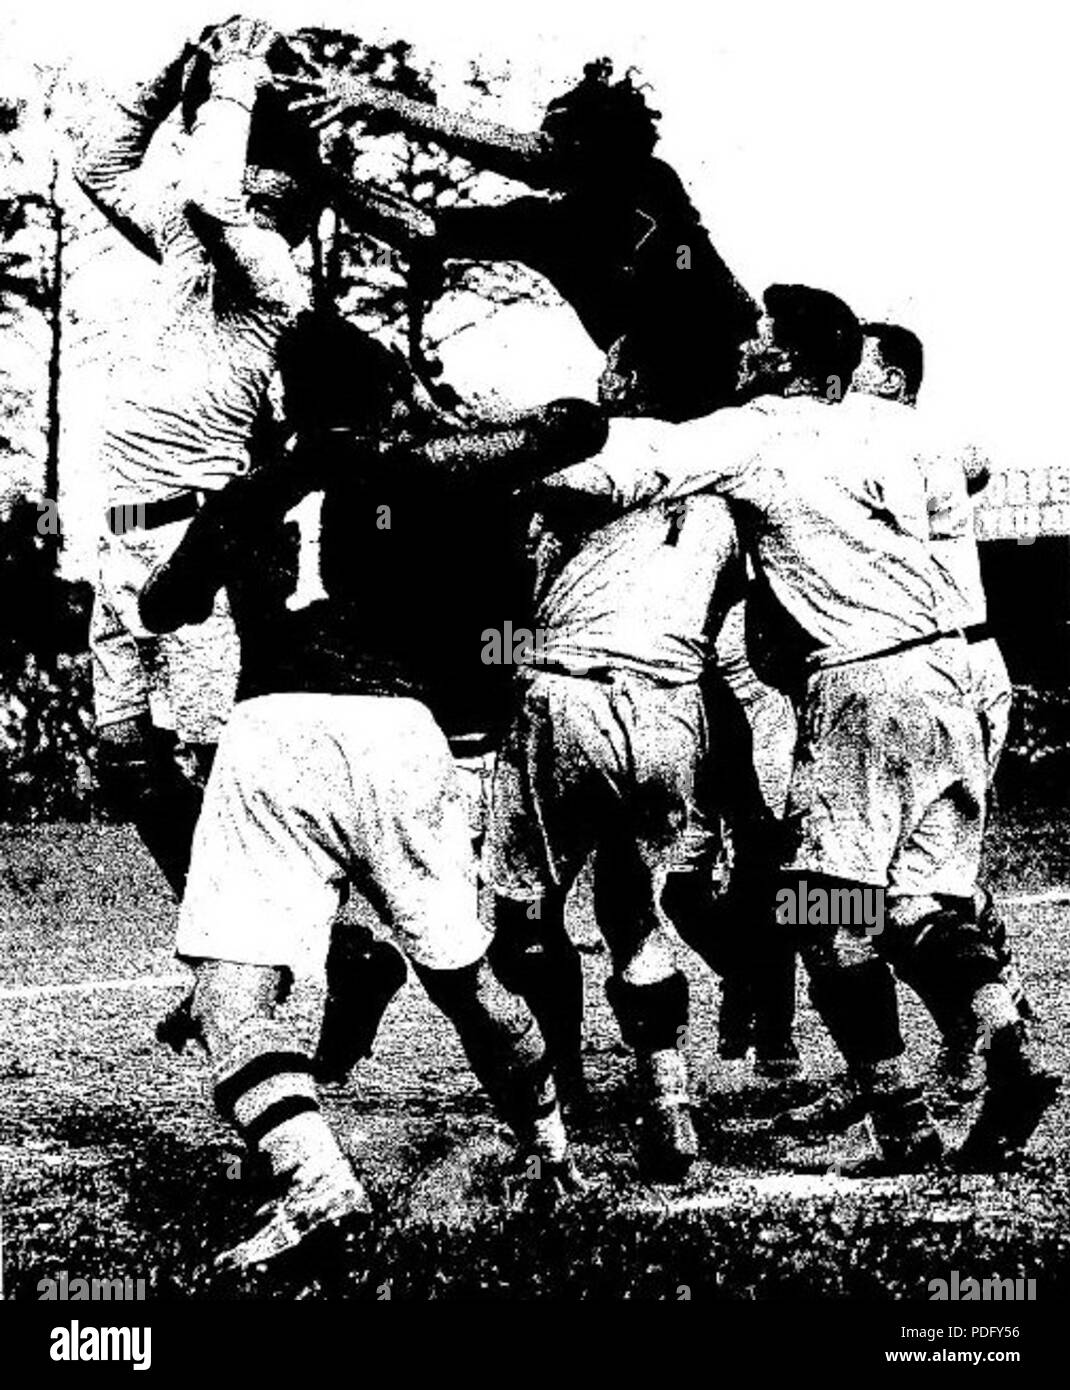 130 Finale du championnat de France de rugby 1931, saut de Barrère (foncé), qui essaie de ravir la balle d'un lyonnais Stock Photo